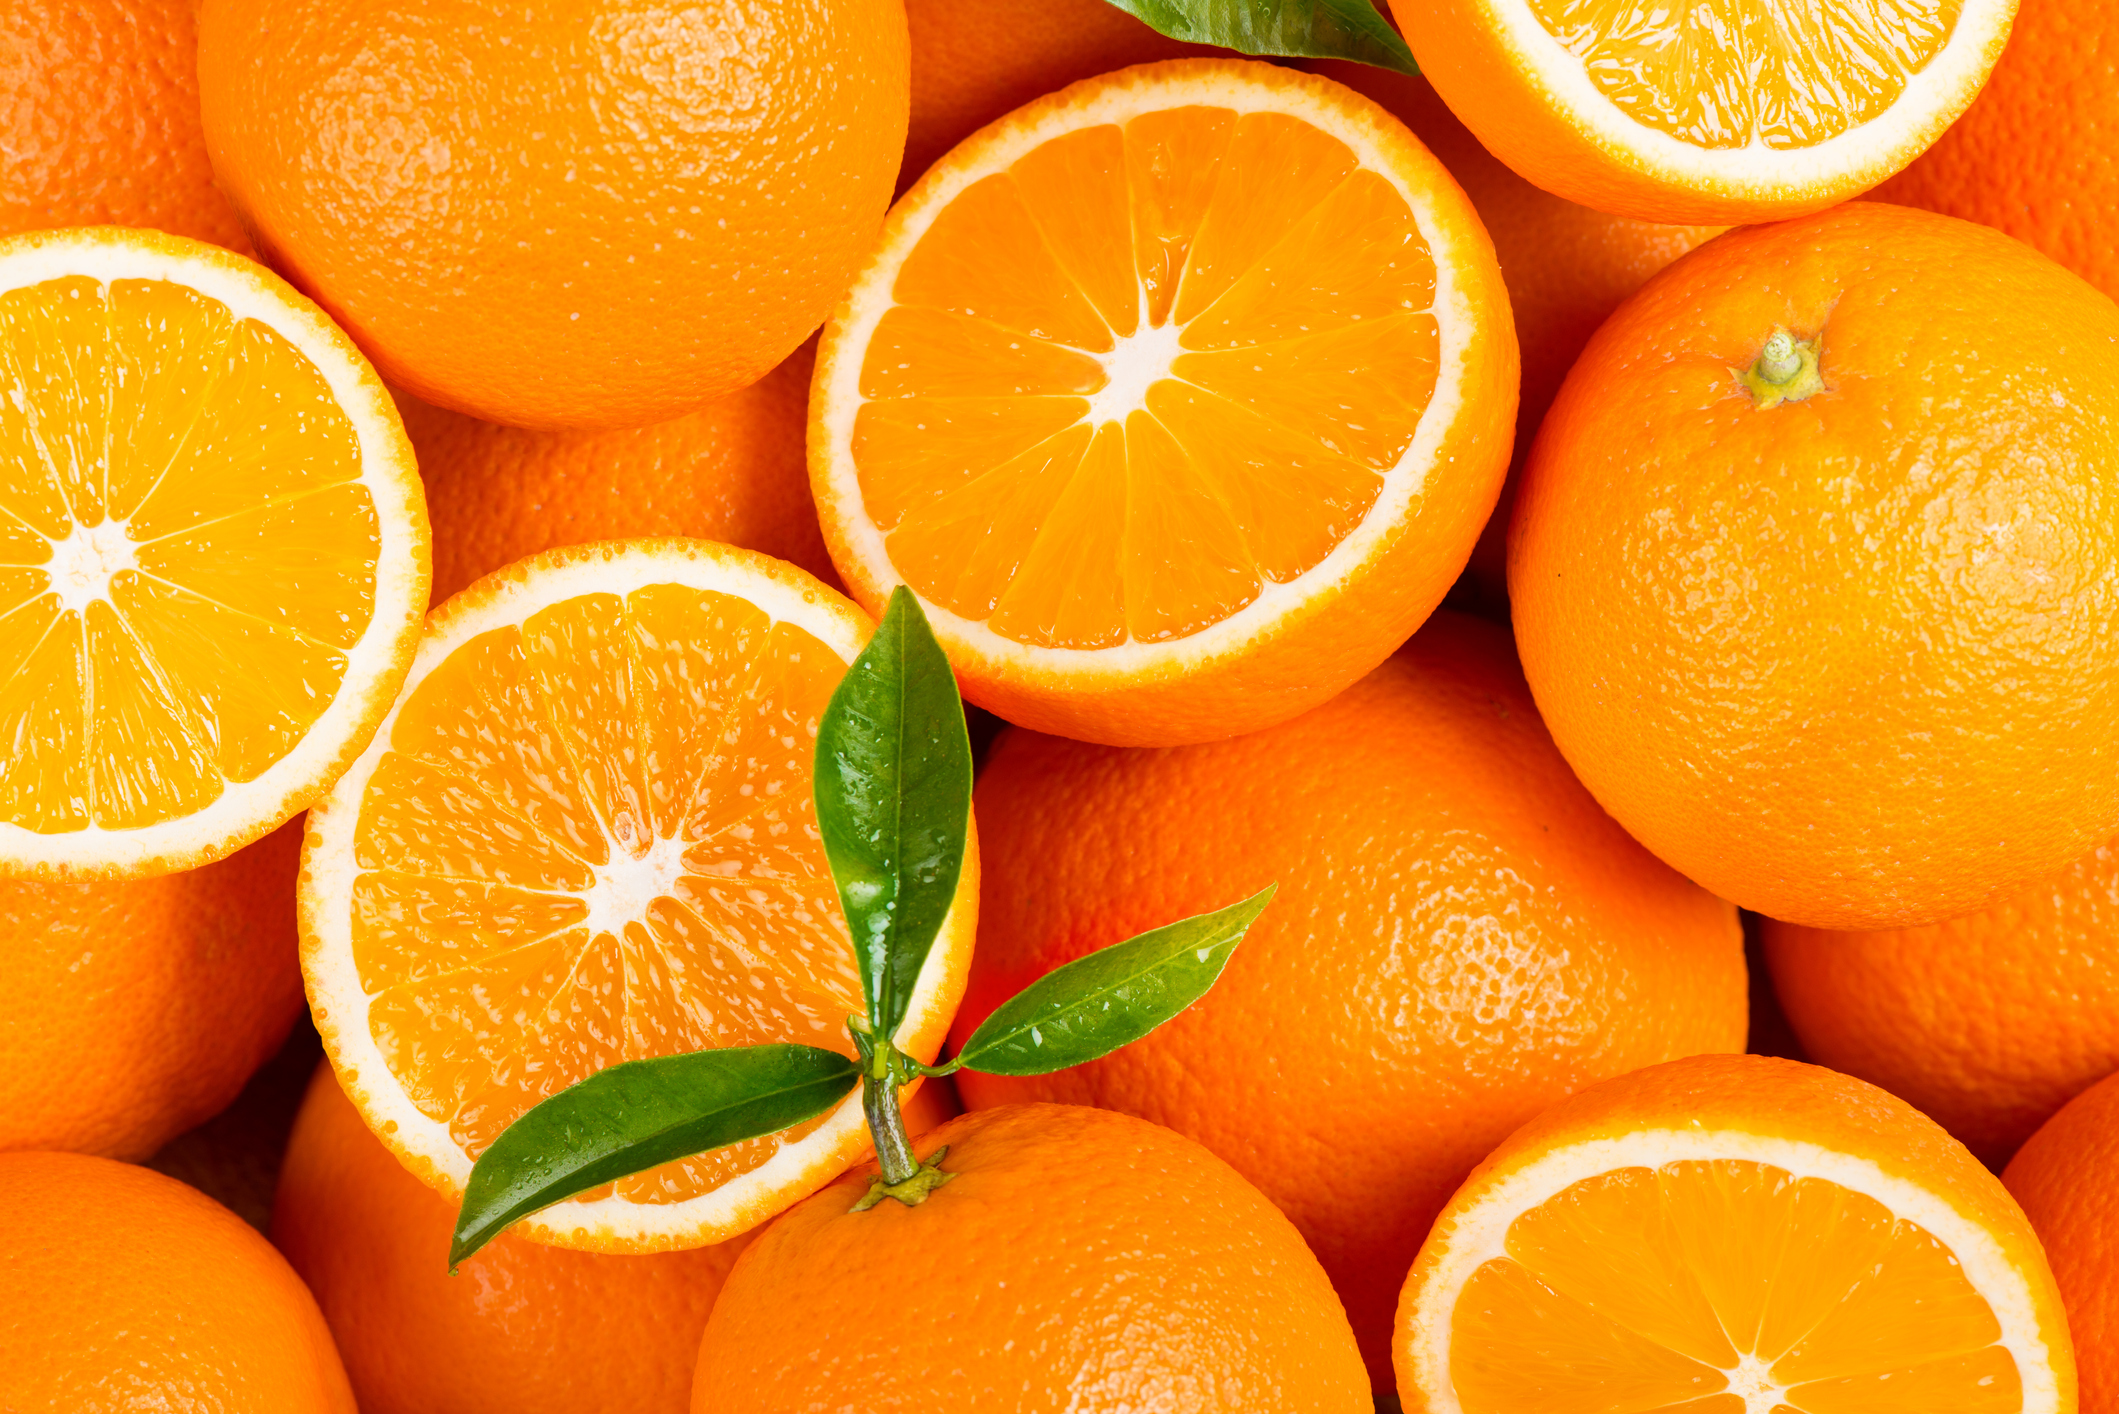 freshpoint-produce-101-citrus-california-oranges 